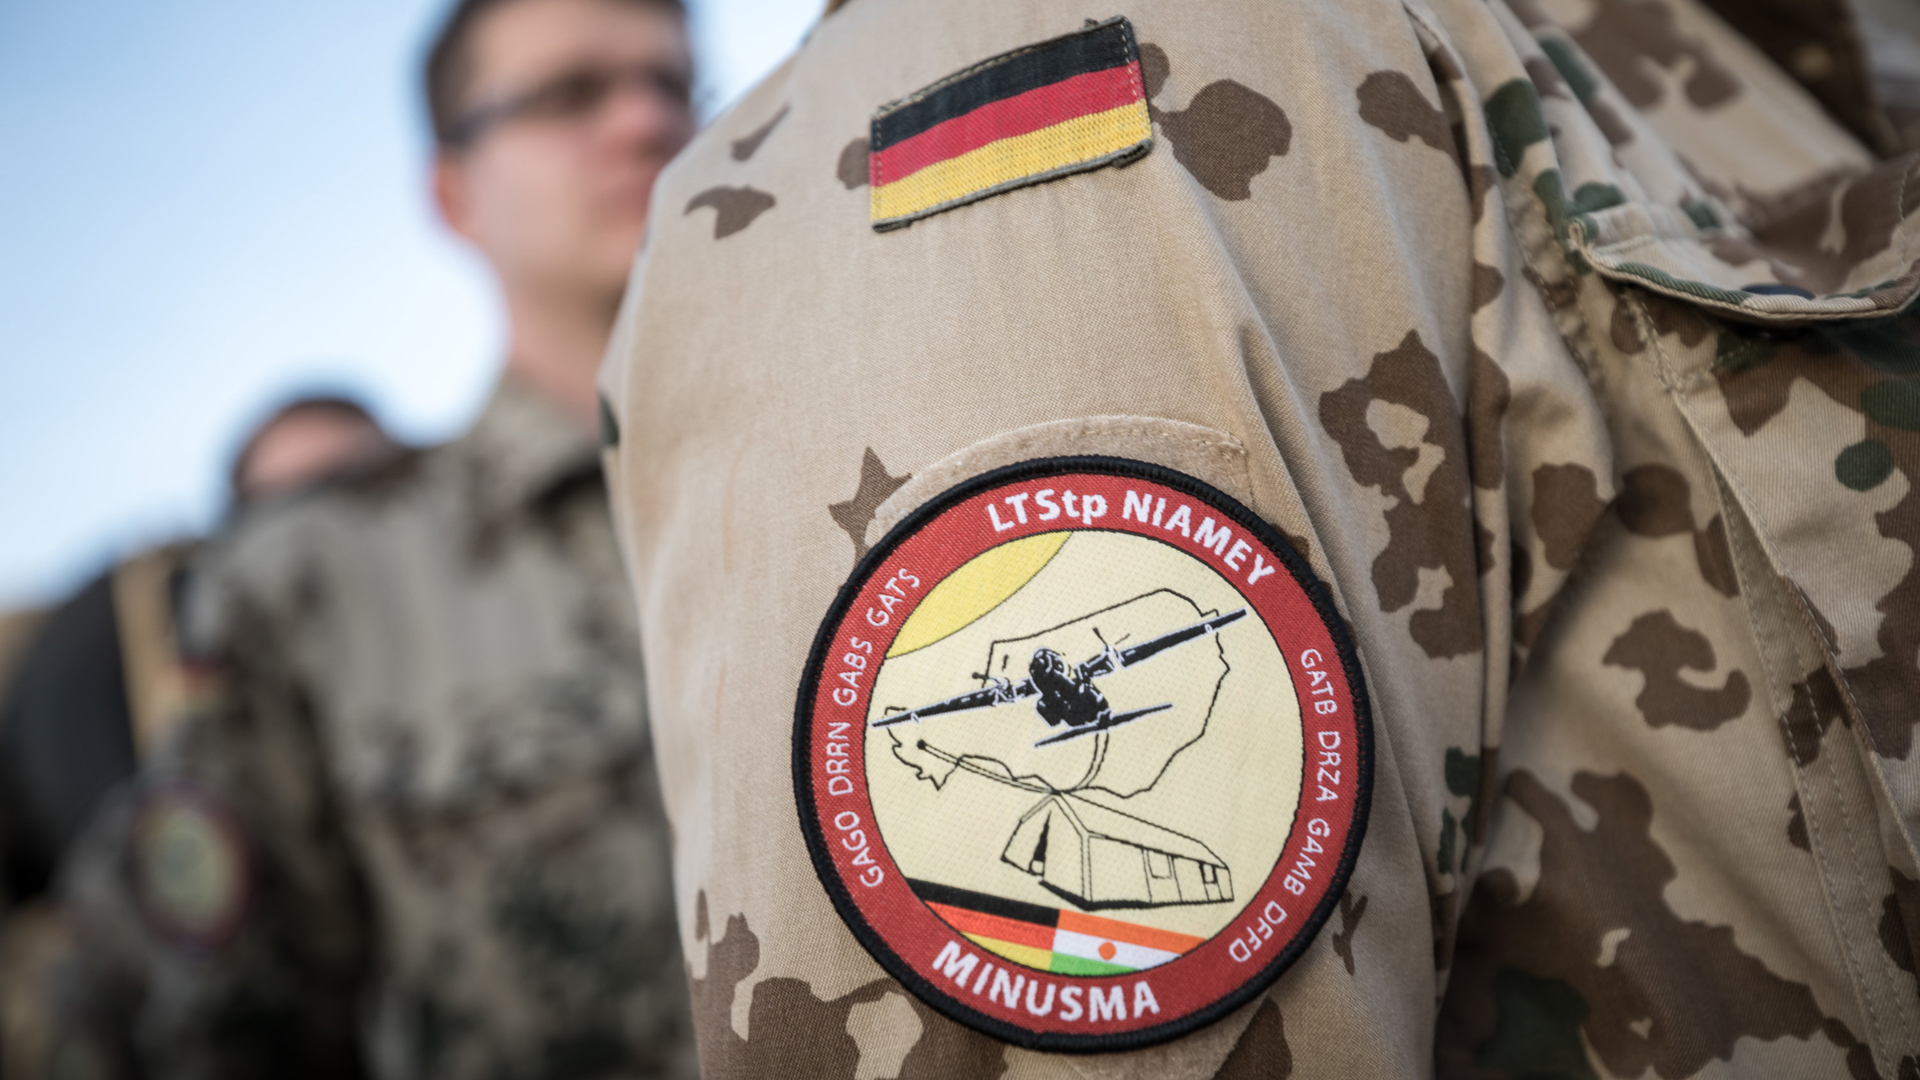 Bundeswehr-Soldat mit Zeichen der UN-Mission Minusma an der Uniform | dpa